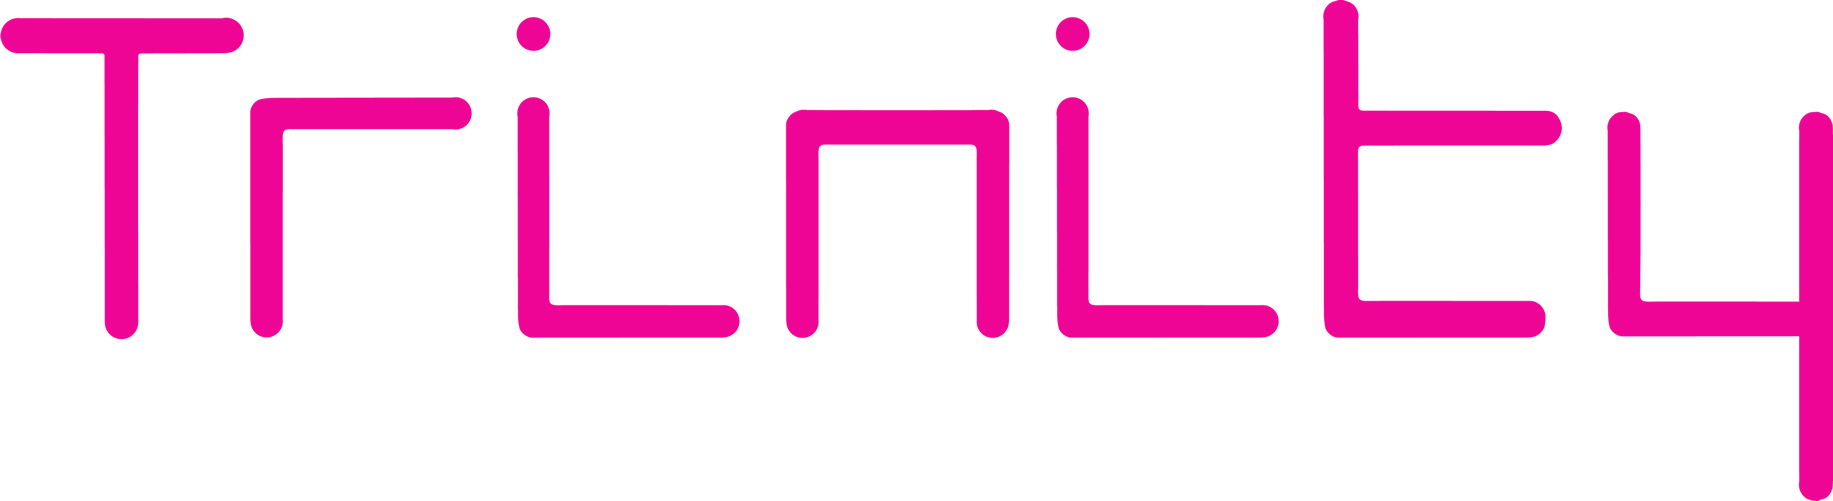 Olaf Falafel at Trinity logo